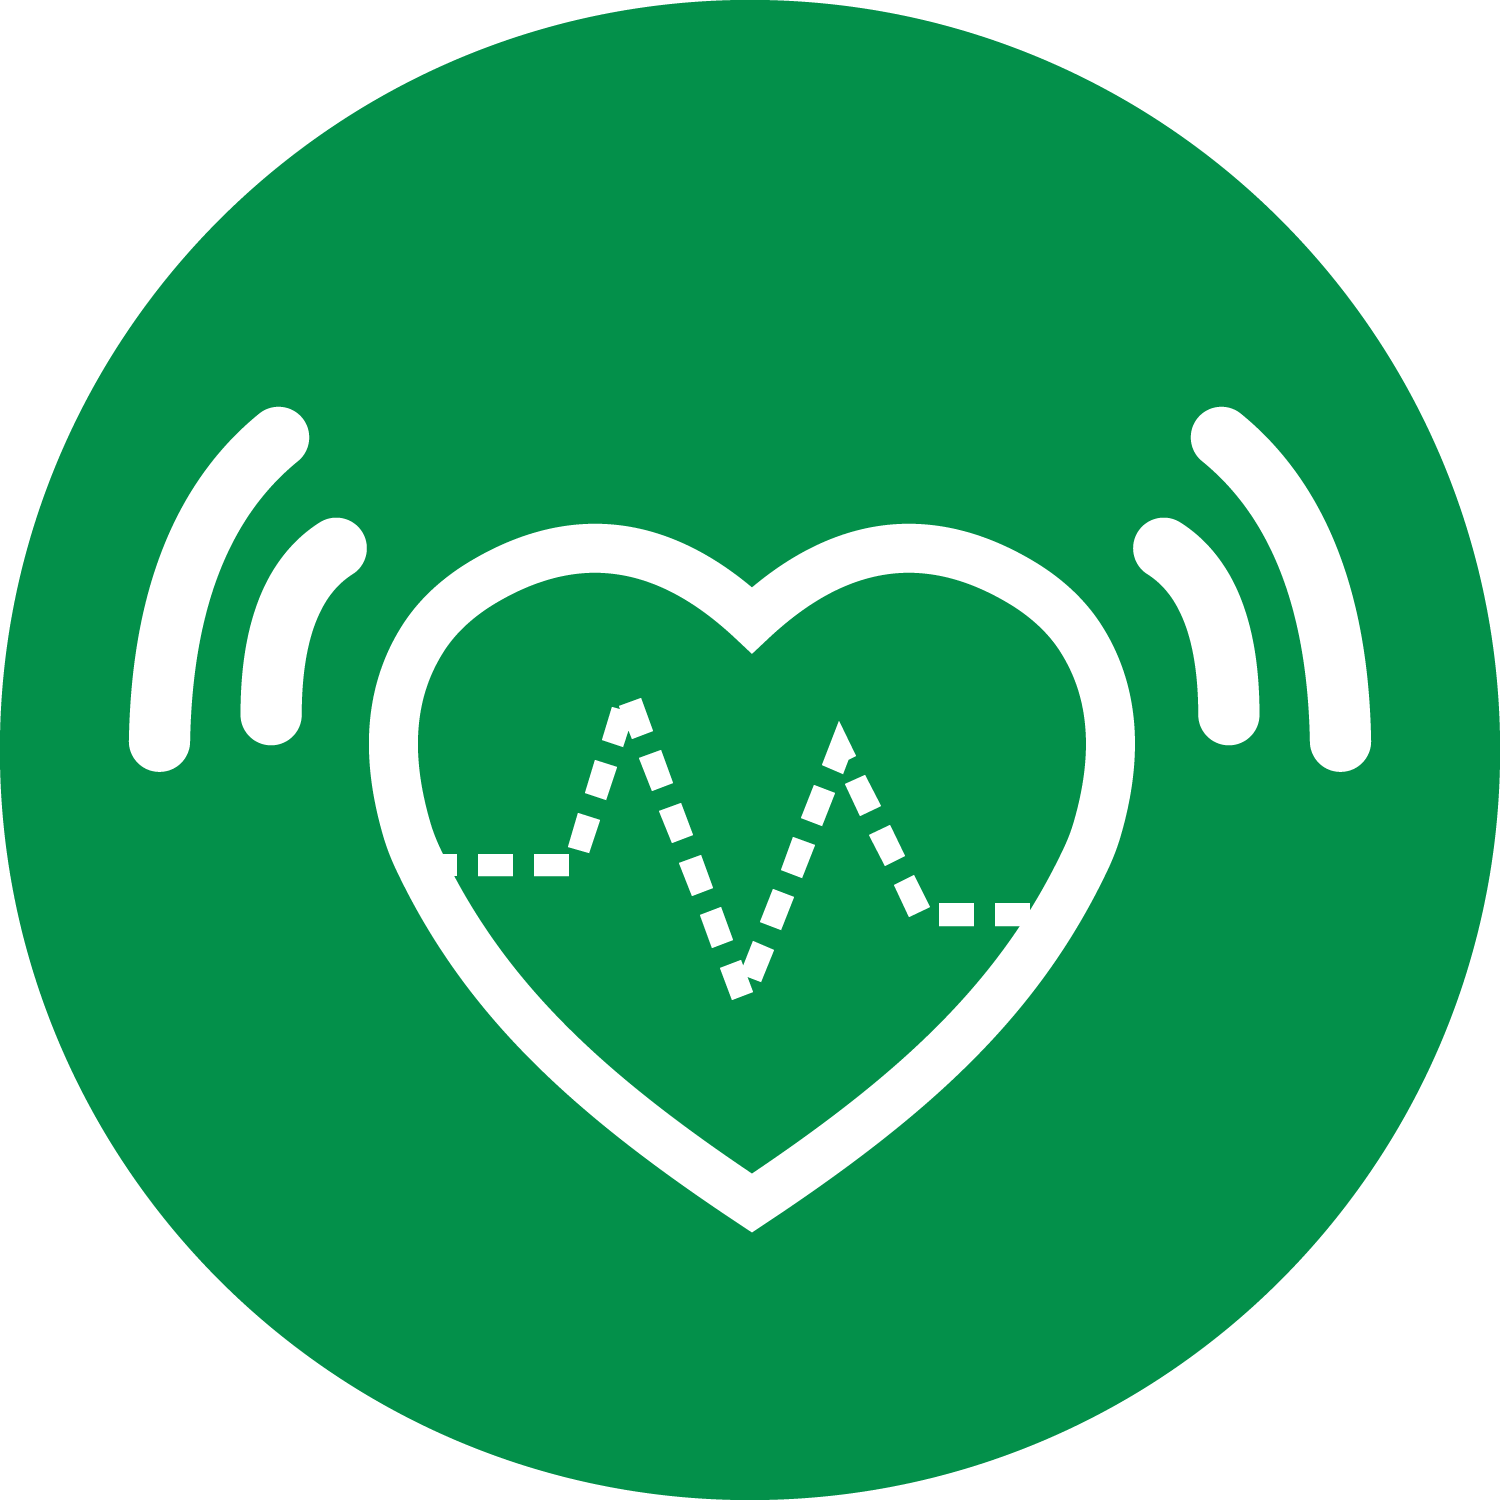 Icone da caracteristica Detector de batimentos cardíacos irregulares 